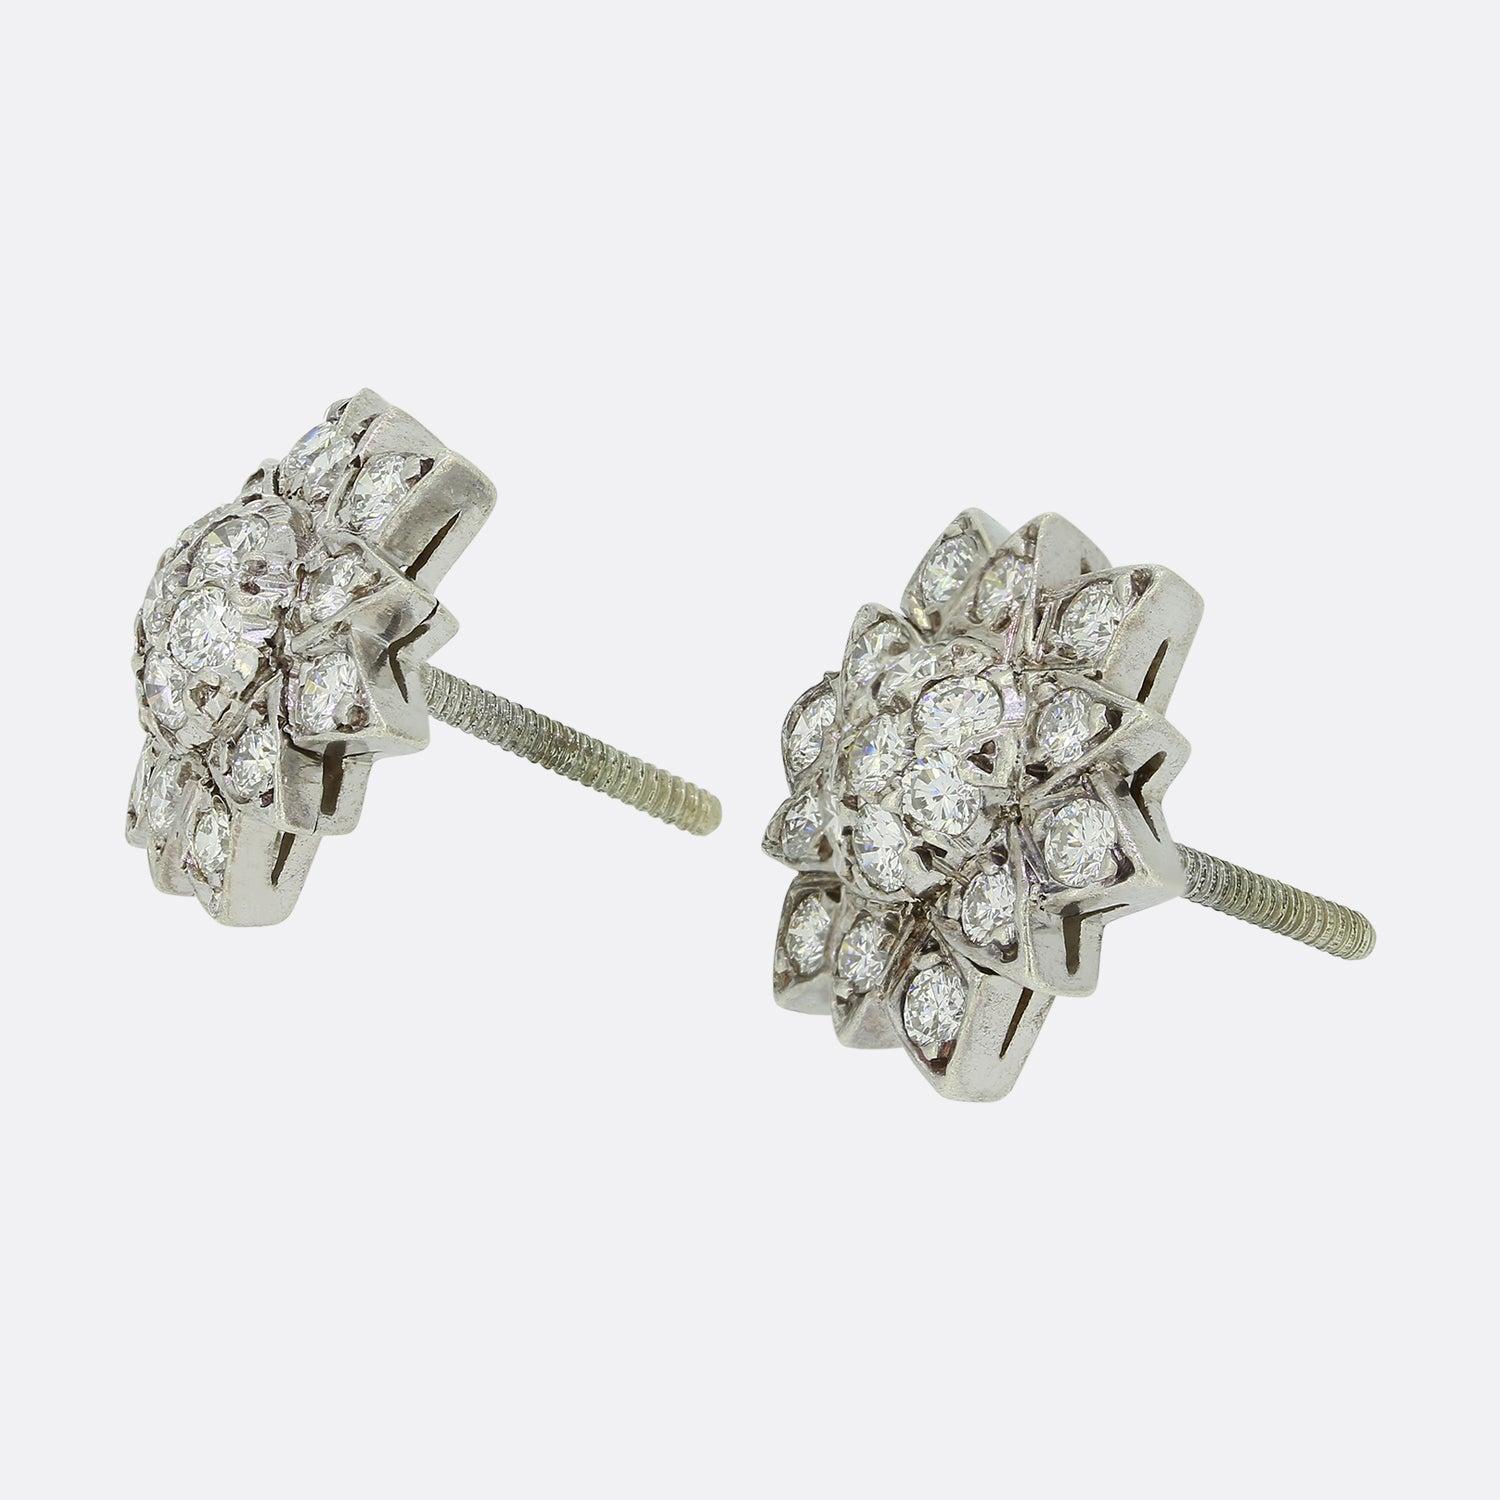 Dies ist ein schönes Paar von Sterling Silber Diamant-Cluster-Ohrringe. Jedes Stück hat die Form einer Sonnenblume, in der eine Reihe runder Diamanten im Brillantschliff schimmern. 

Zustand: Gebraucht (Sehr gut)
Gewicht: 4.7 Gramm
Abmessungen: 16mm